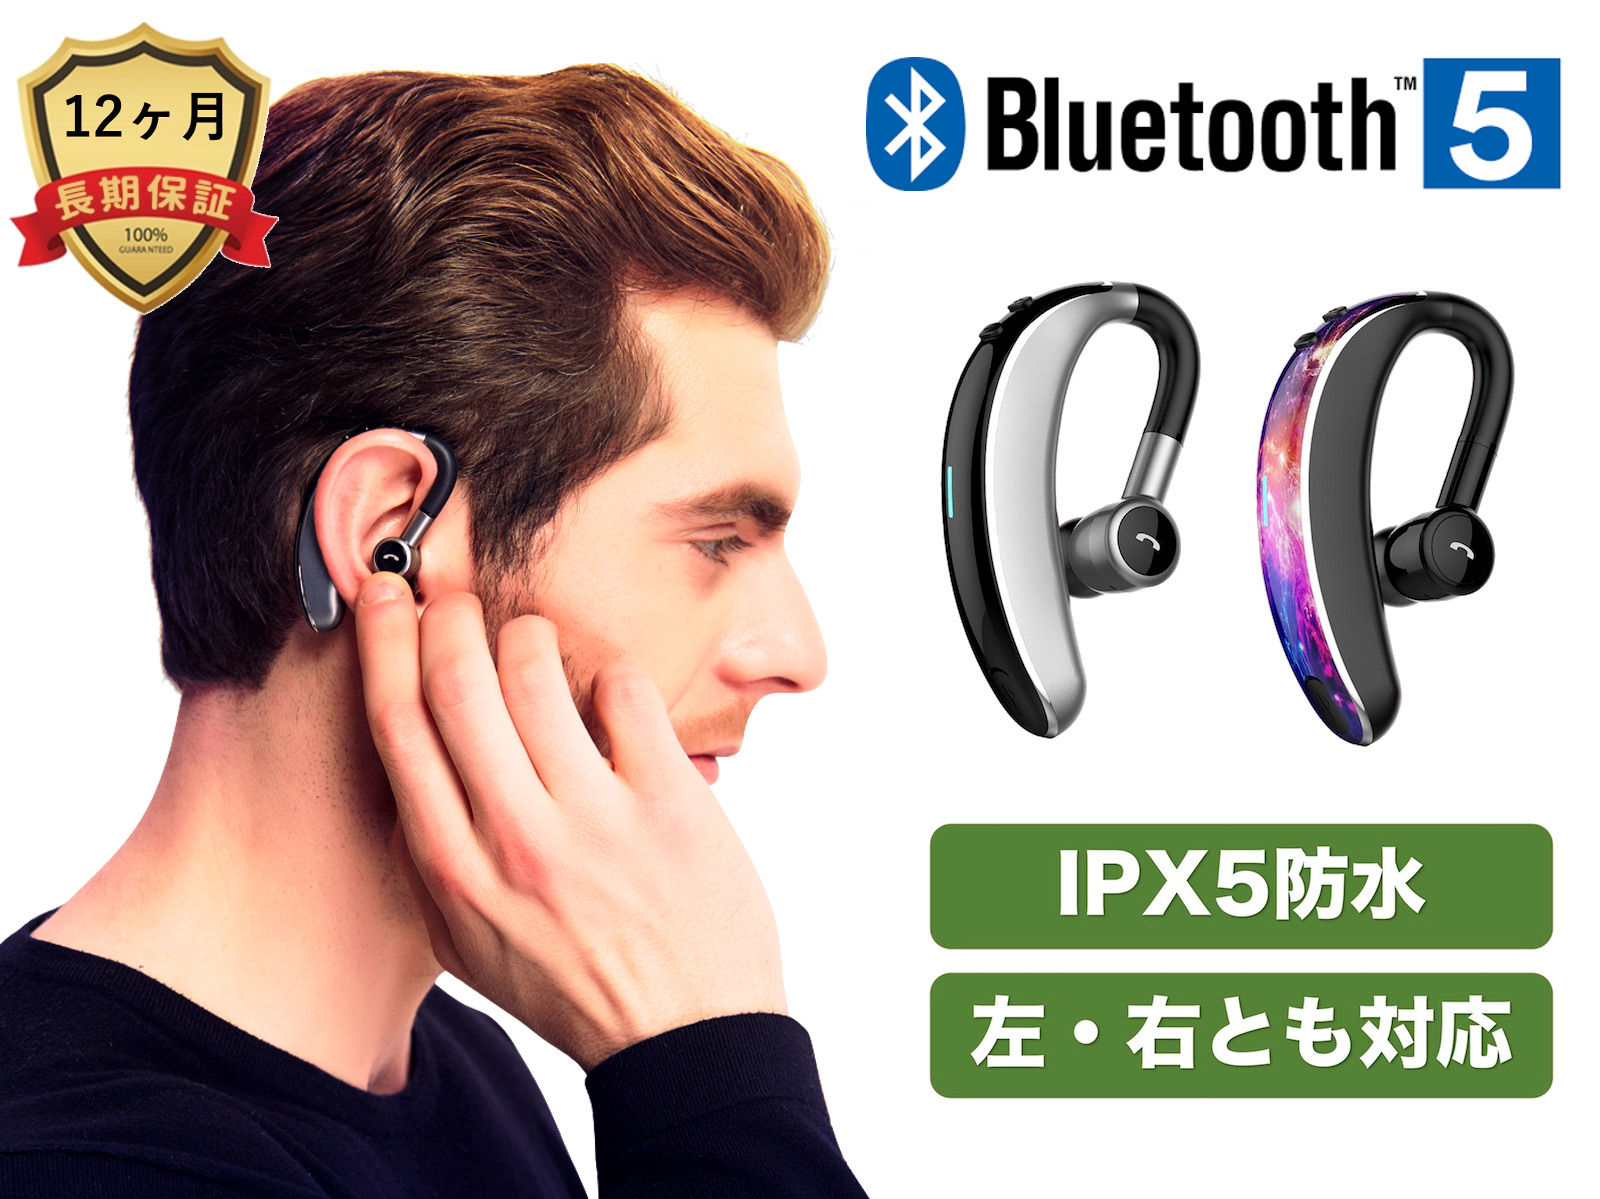 Bluetooth 5.0 IPX5防水 ワイヤレスイヤホン 左右とも対応 連続20時間使用 日本語説明書 日本正規品 至高 ヘッドホン 片耳専用 超軽量 超小型 iPhone Android ヘッドセット ブルートゥース マイク内蔵 COOPO SALE 96%OFF スマホ CP-V7 送料無料 対応 高音質